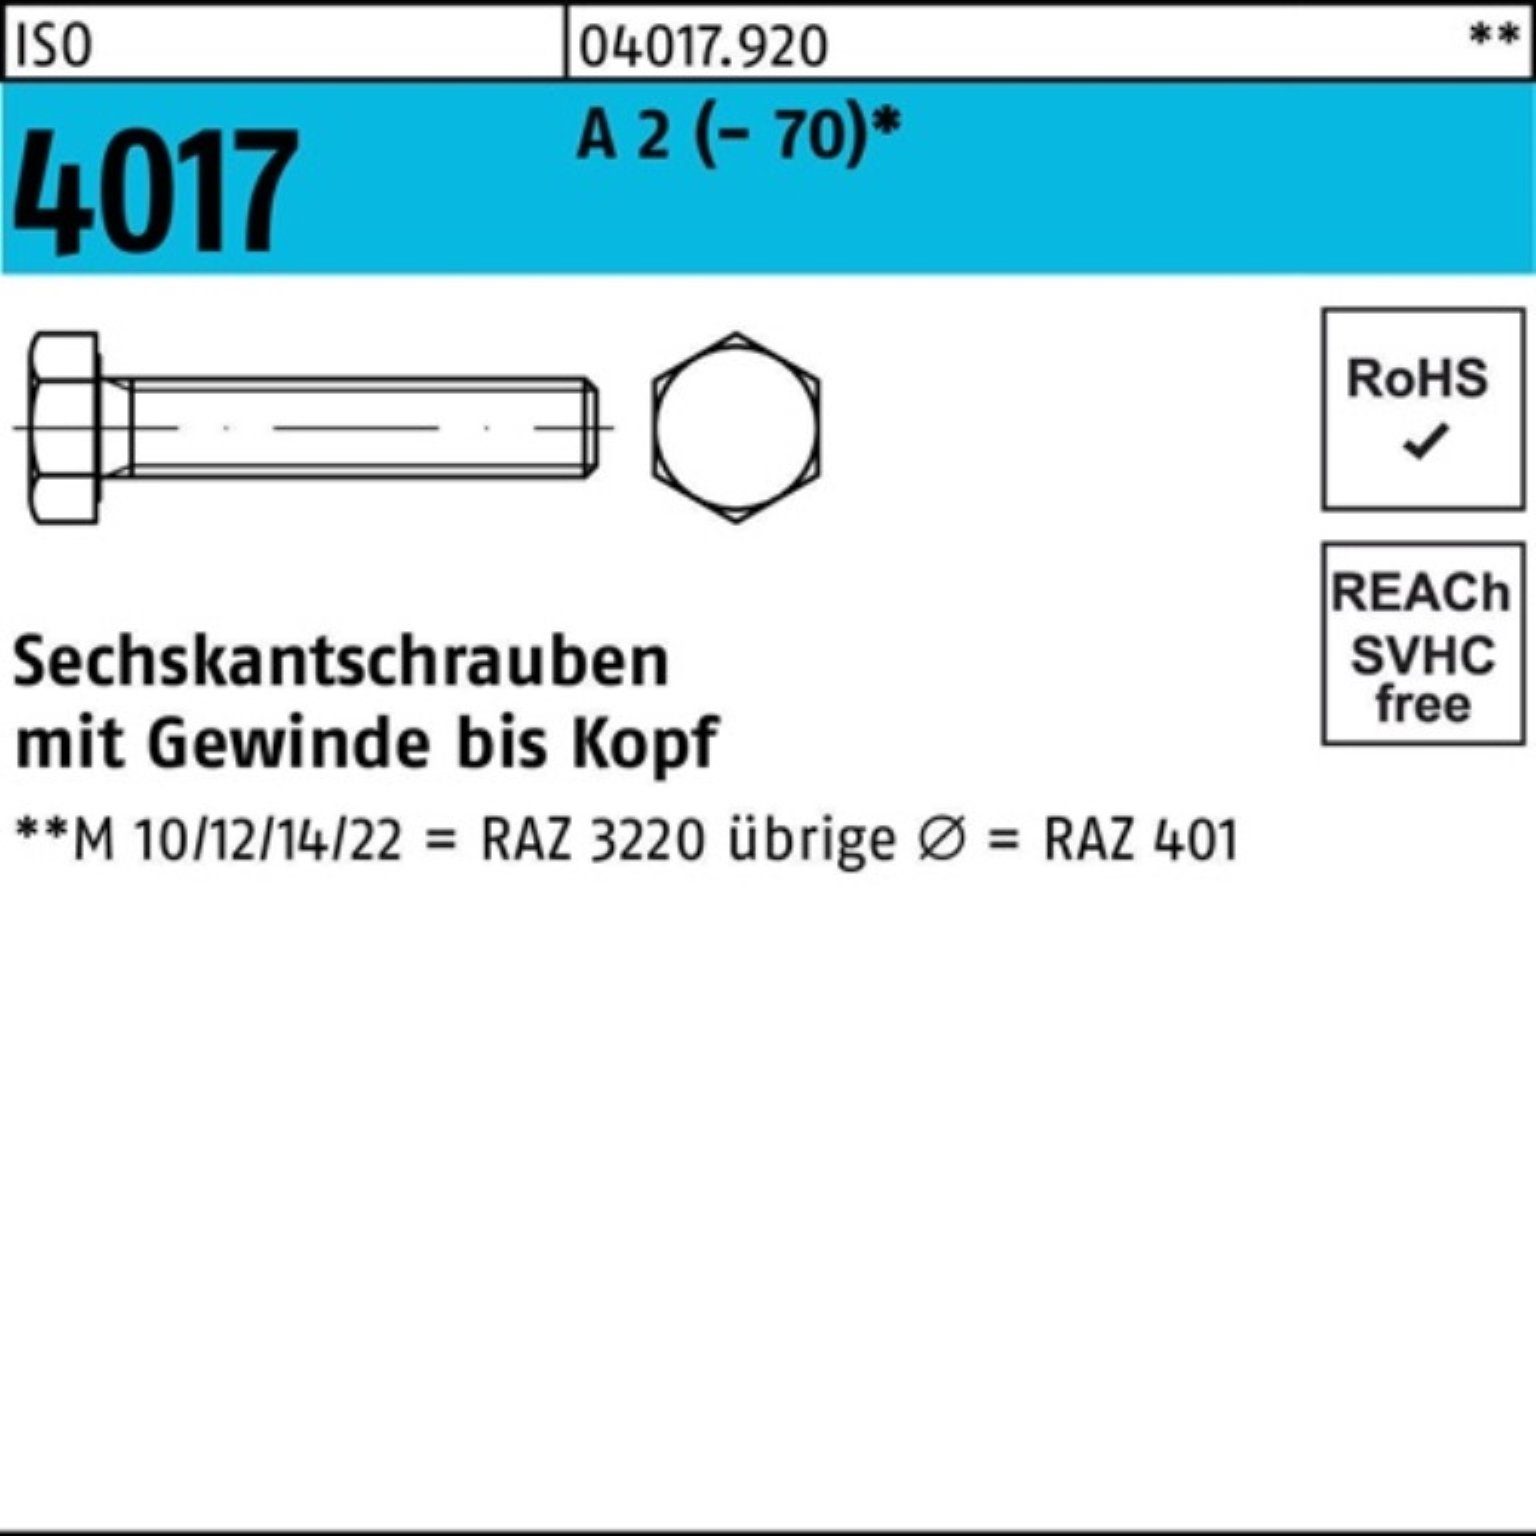 Bufab Sechskantschraube 100er Pack Sechskantschraube ISO 4017 VG M16x 25 A 2 (70) 50 Stück